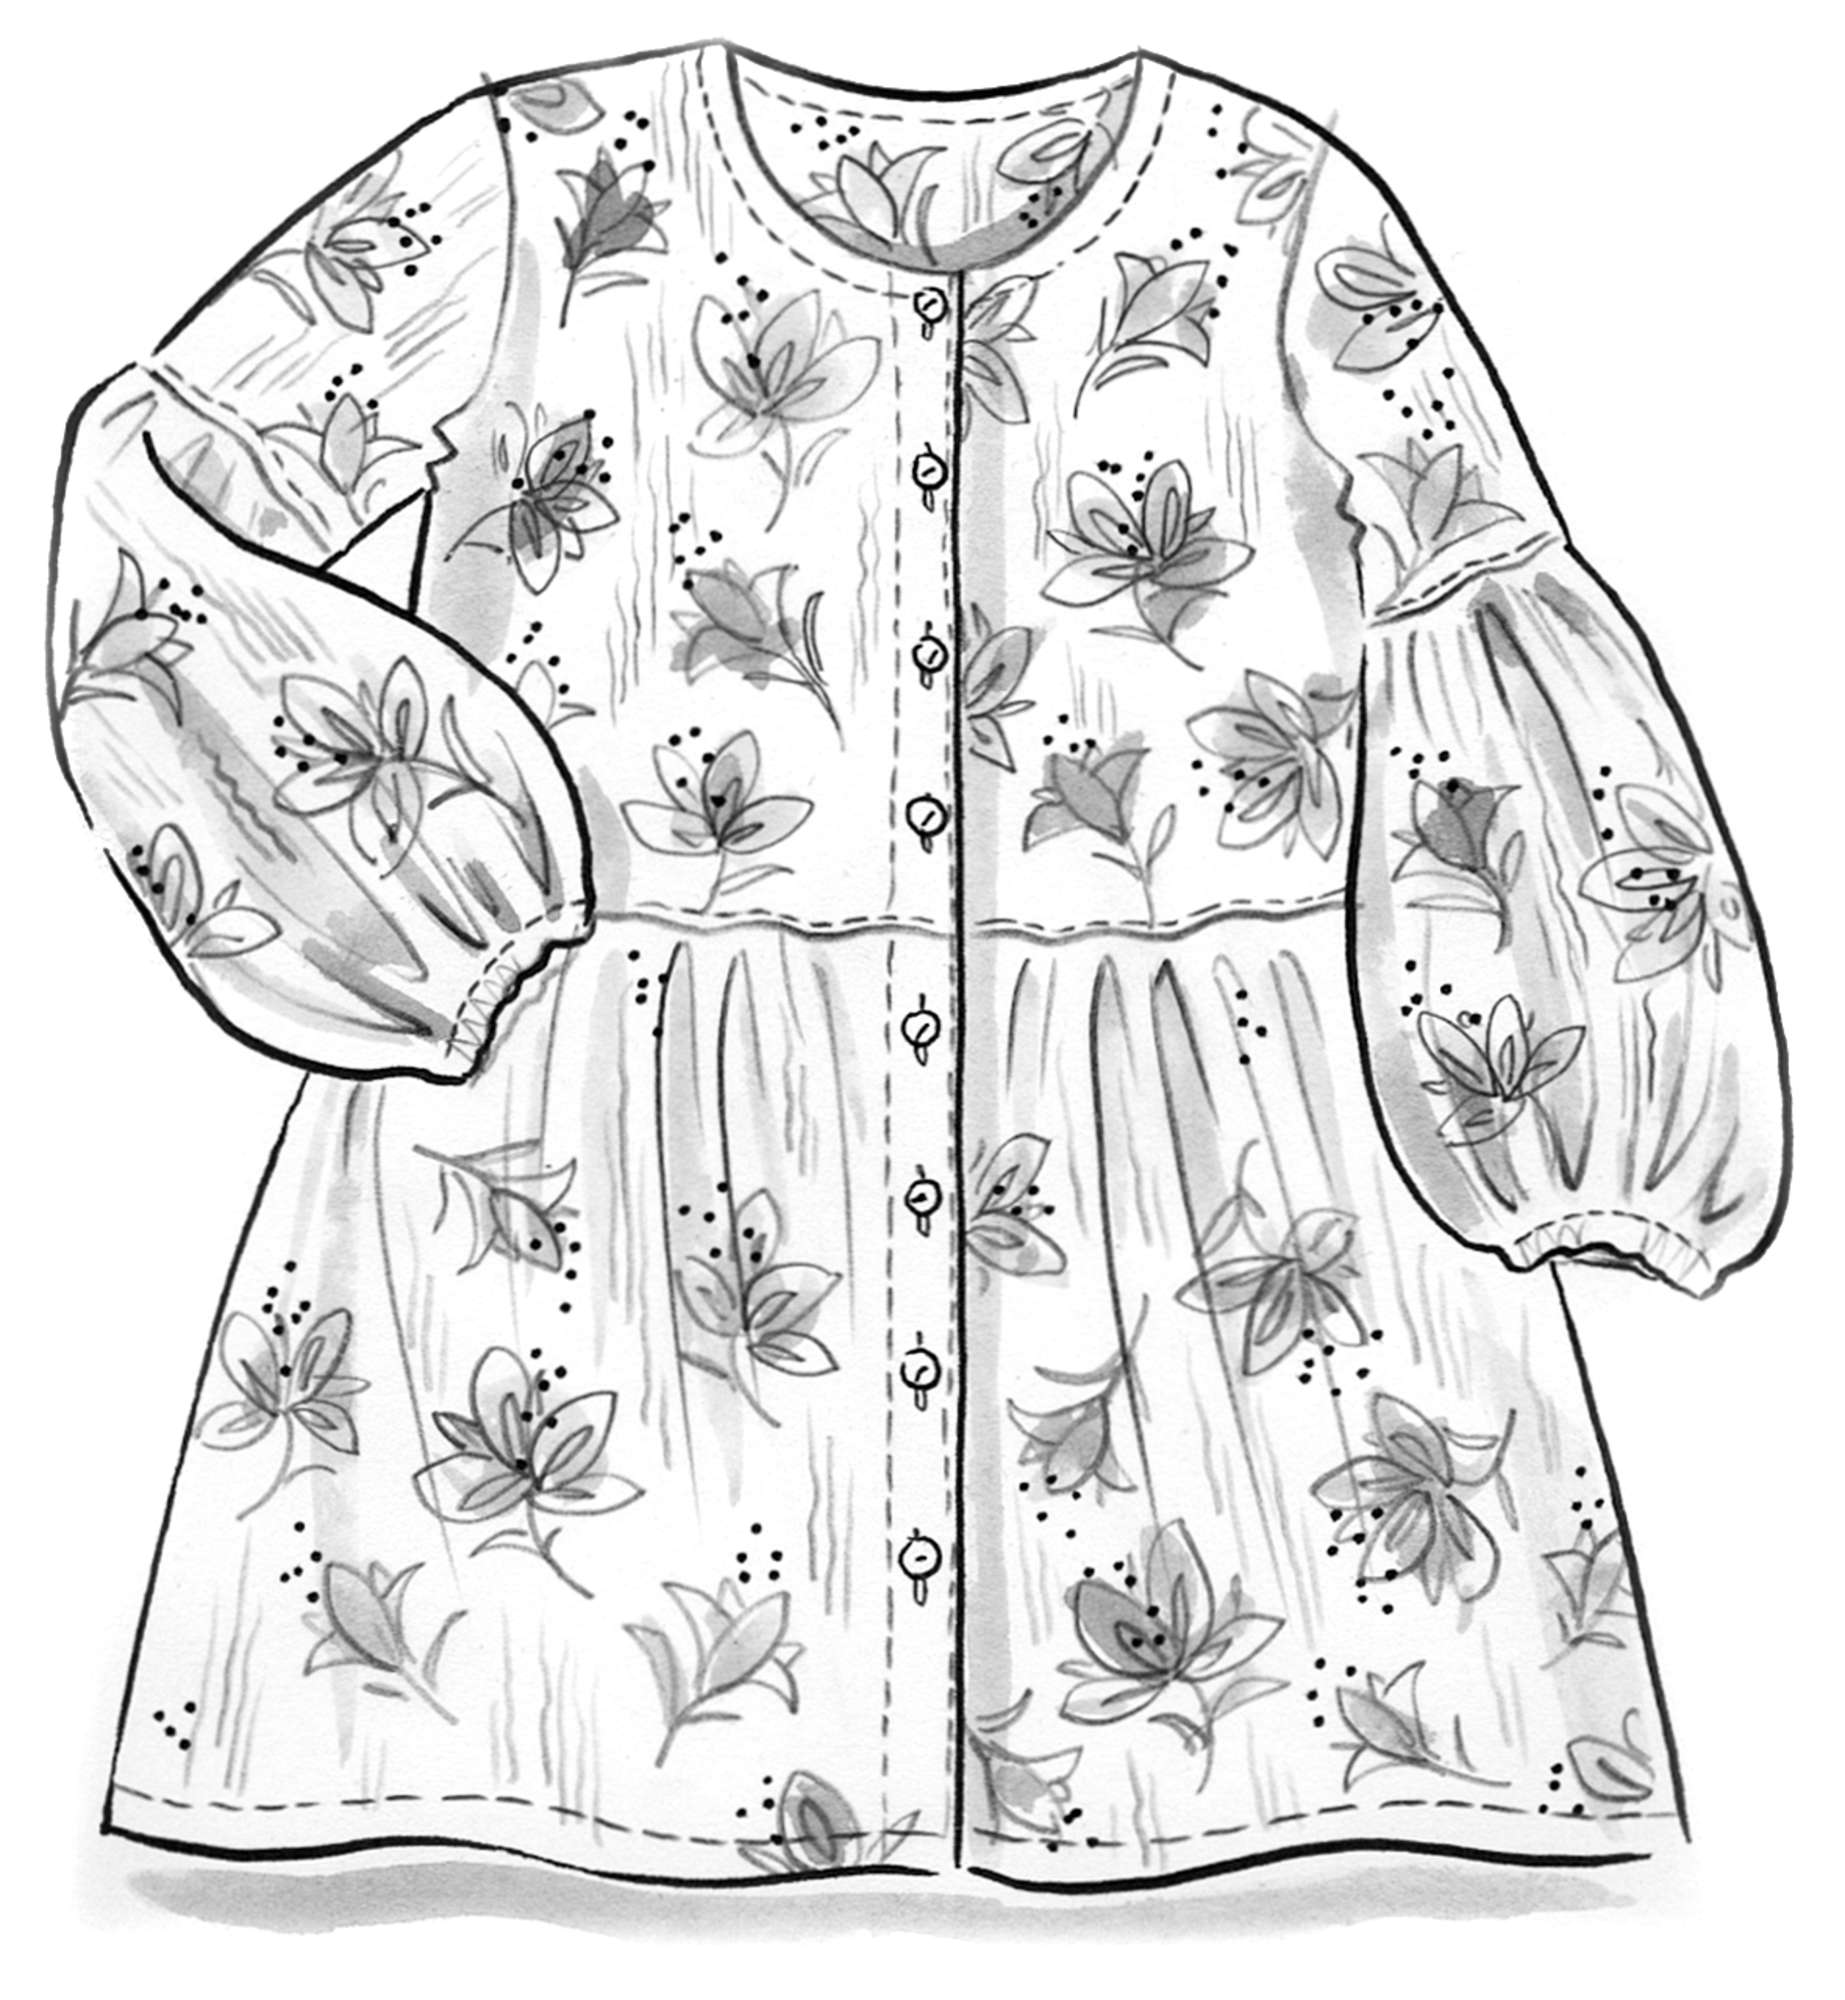 Amaryllis artist’s blouse